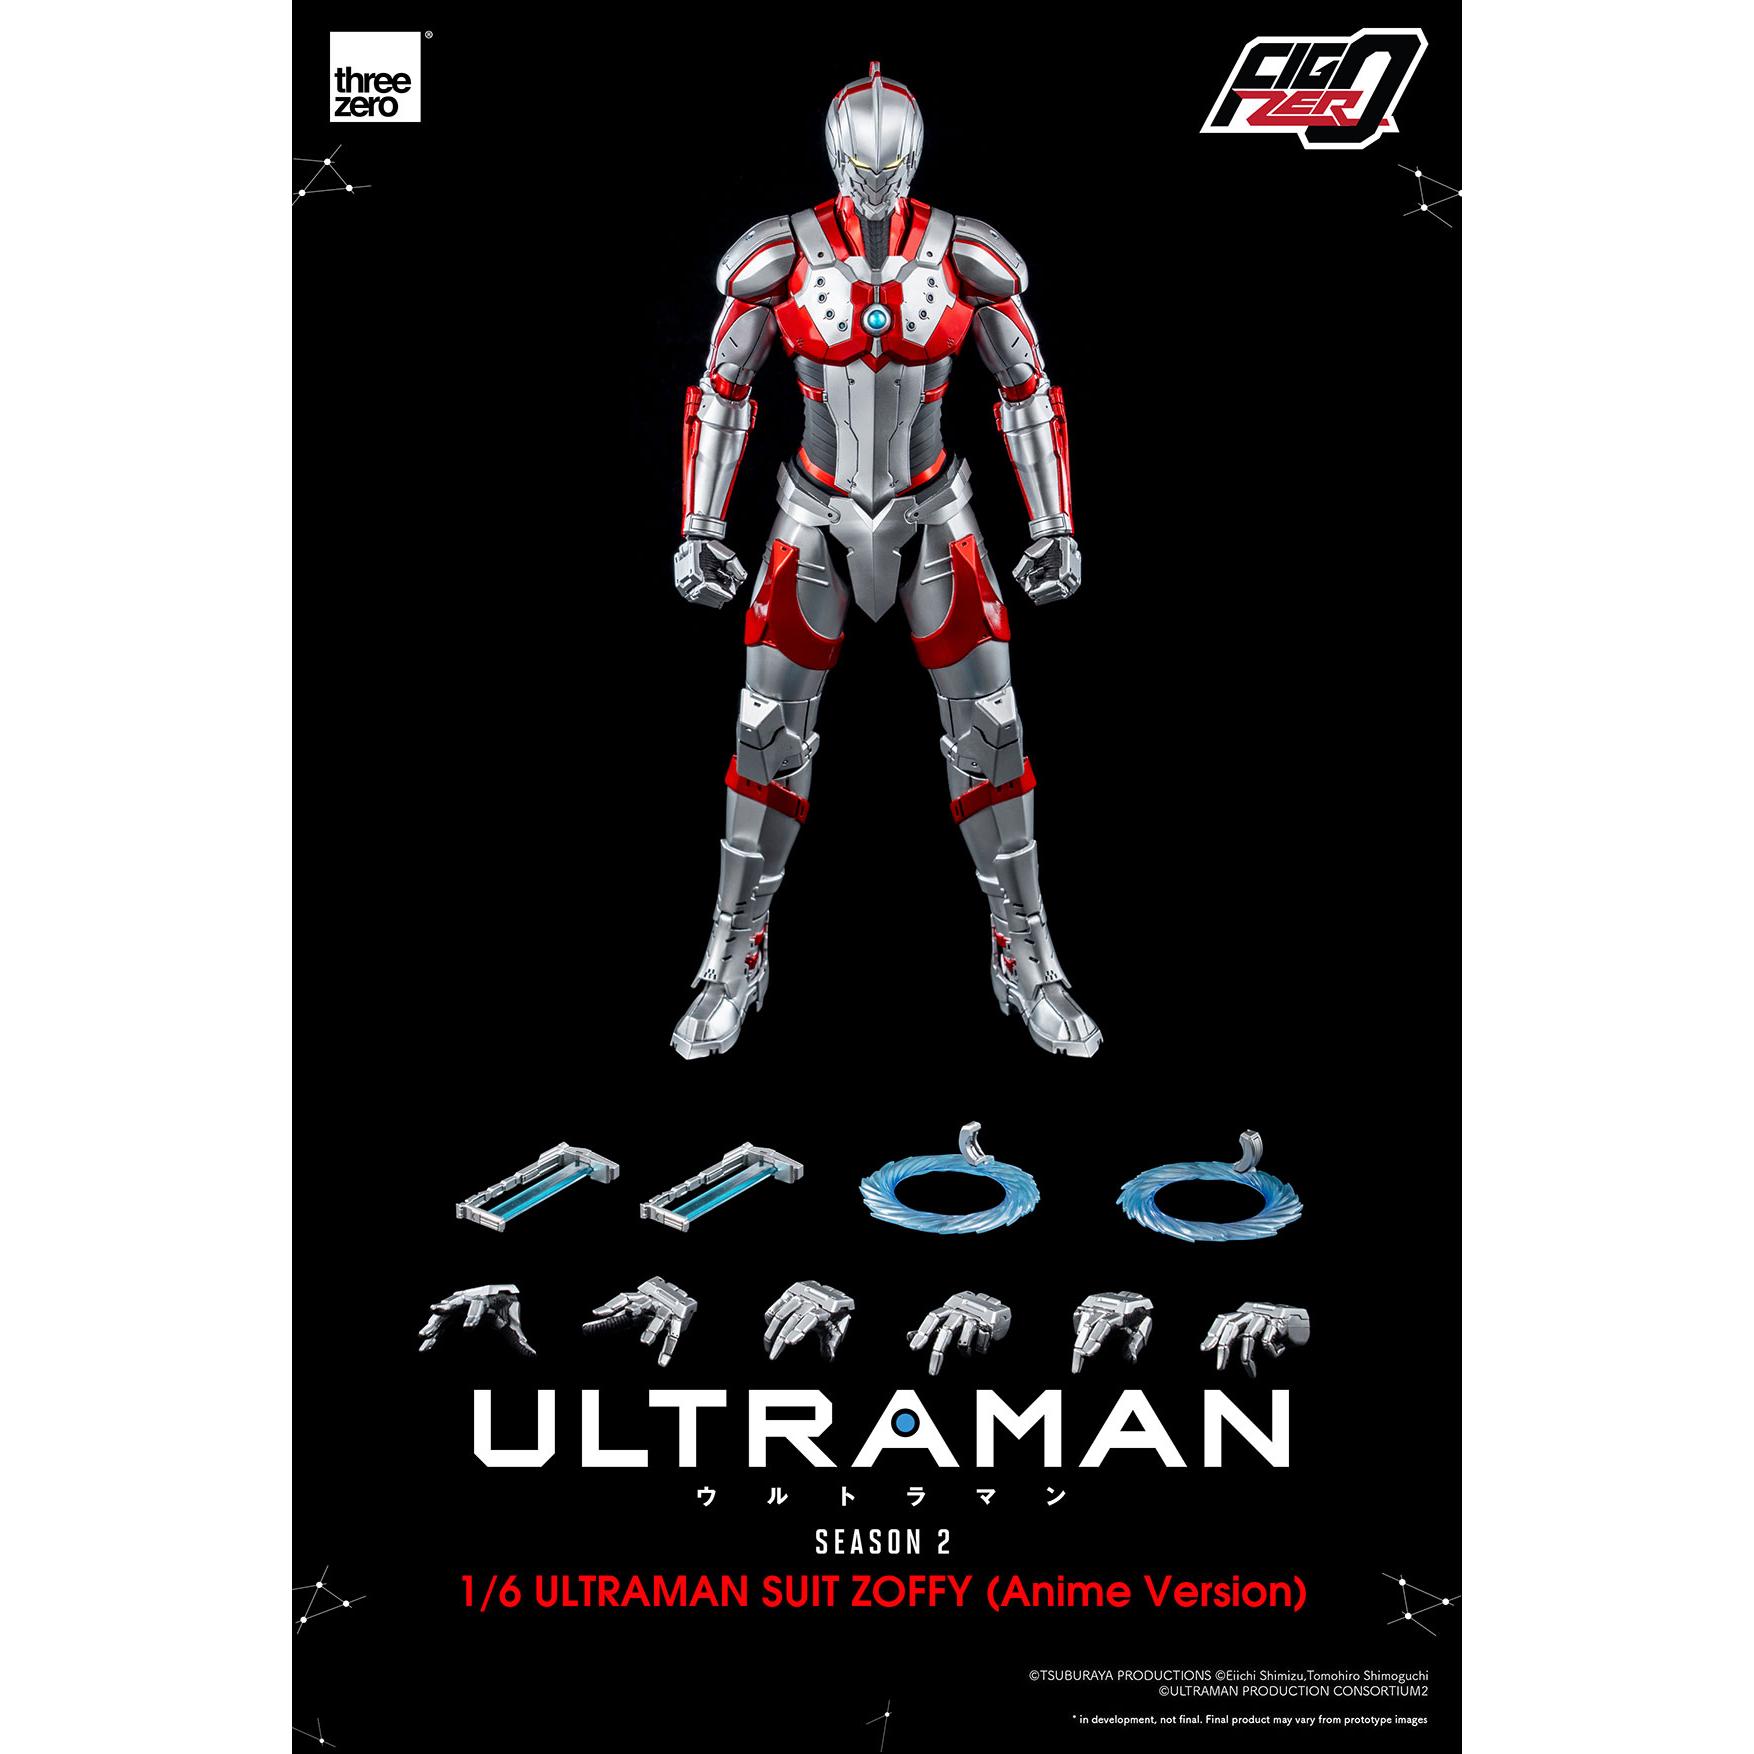 Ultraman manga  Wikipedia